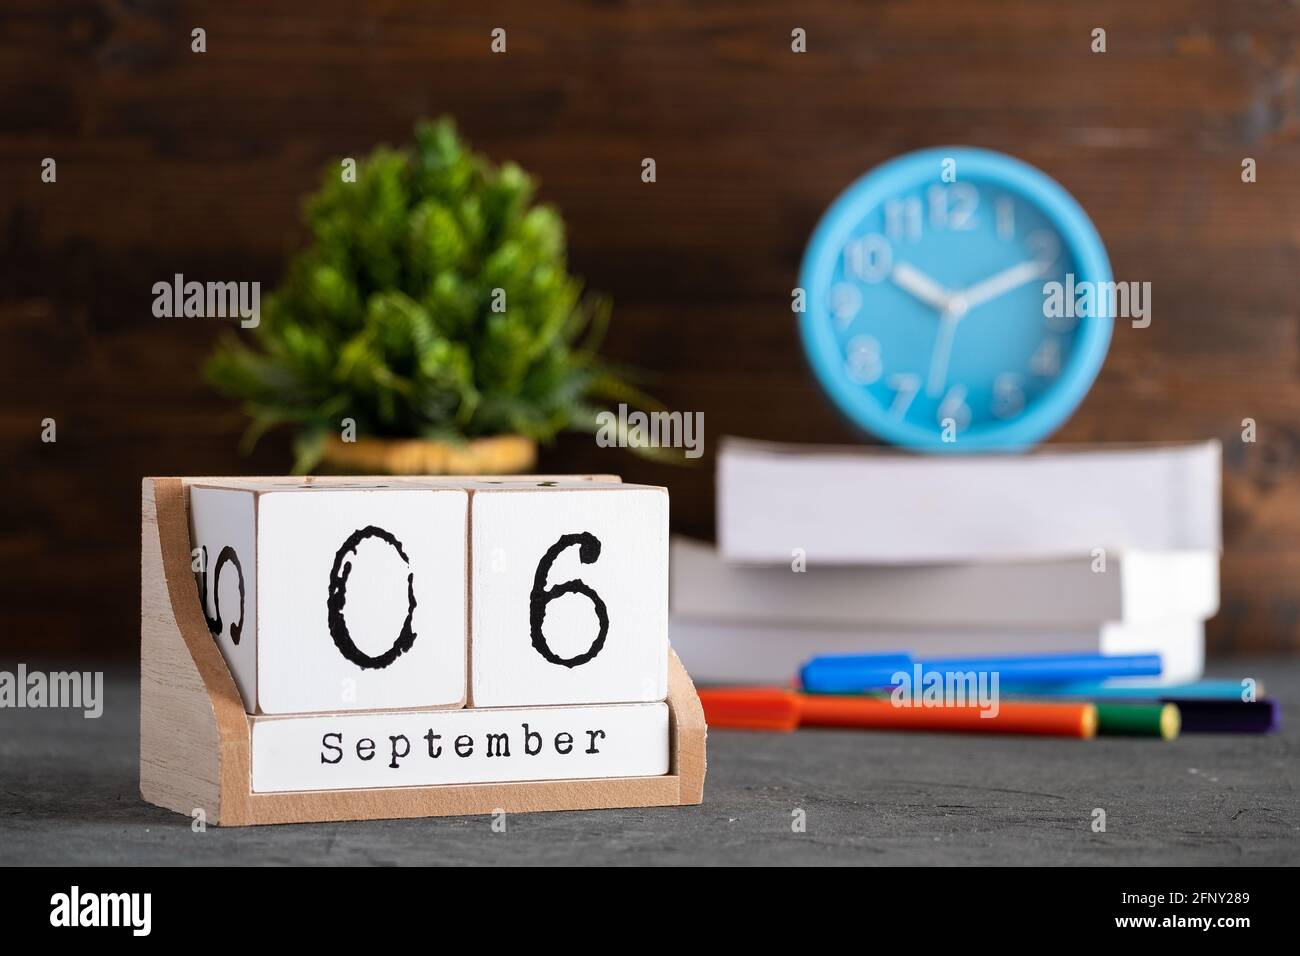 06e septembre. Septembre 06 calendrier cube en bois avec des objets flous sur fond. Banque D'Images